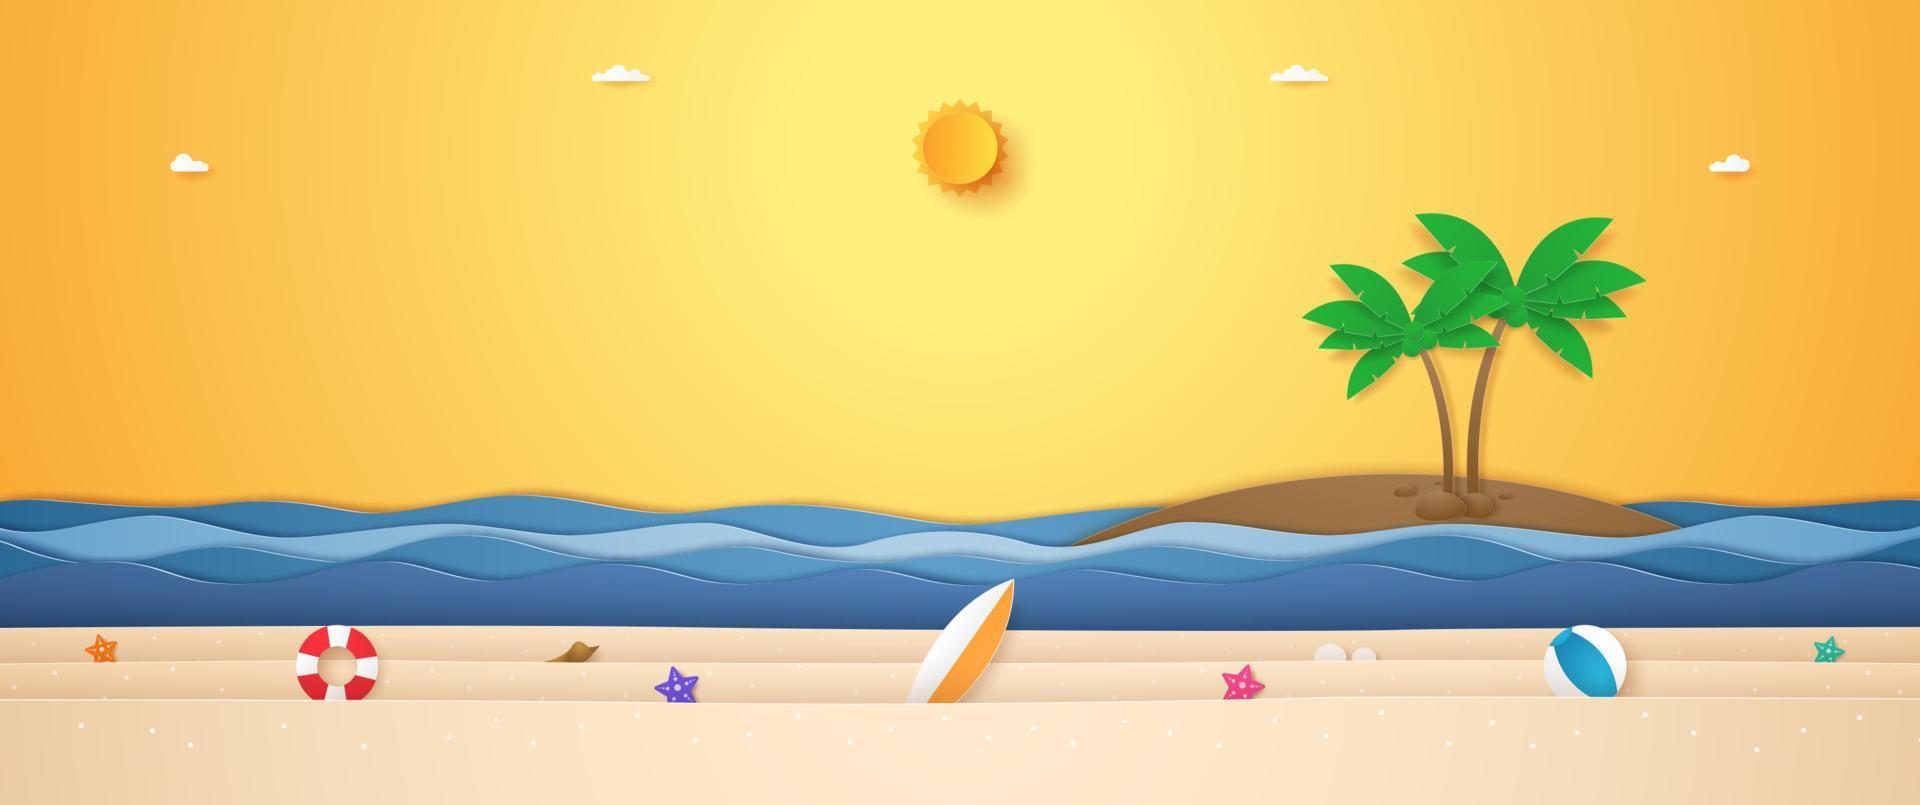 paesaggio di albero di cocco sull'isola, mare ondulato e roba estiva sulla spiaggia con sole splendente nel cielo soleggiato per l'estate in stile arte cartacea vettore